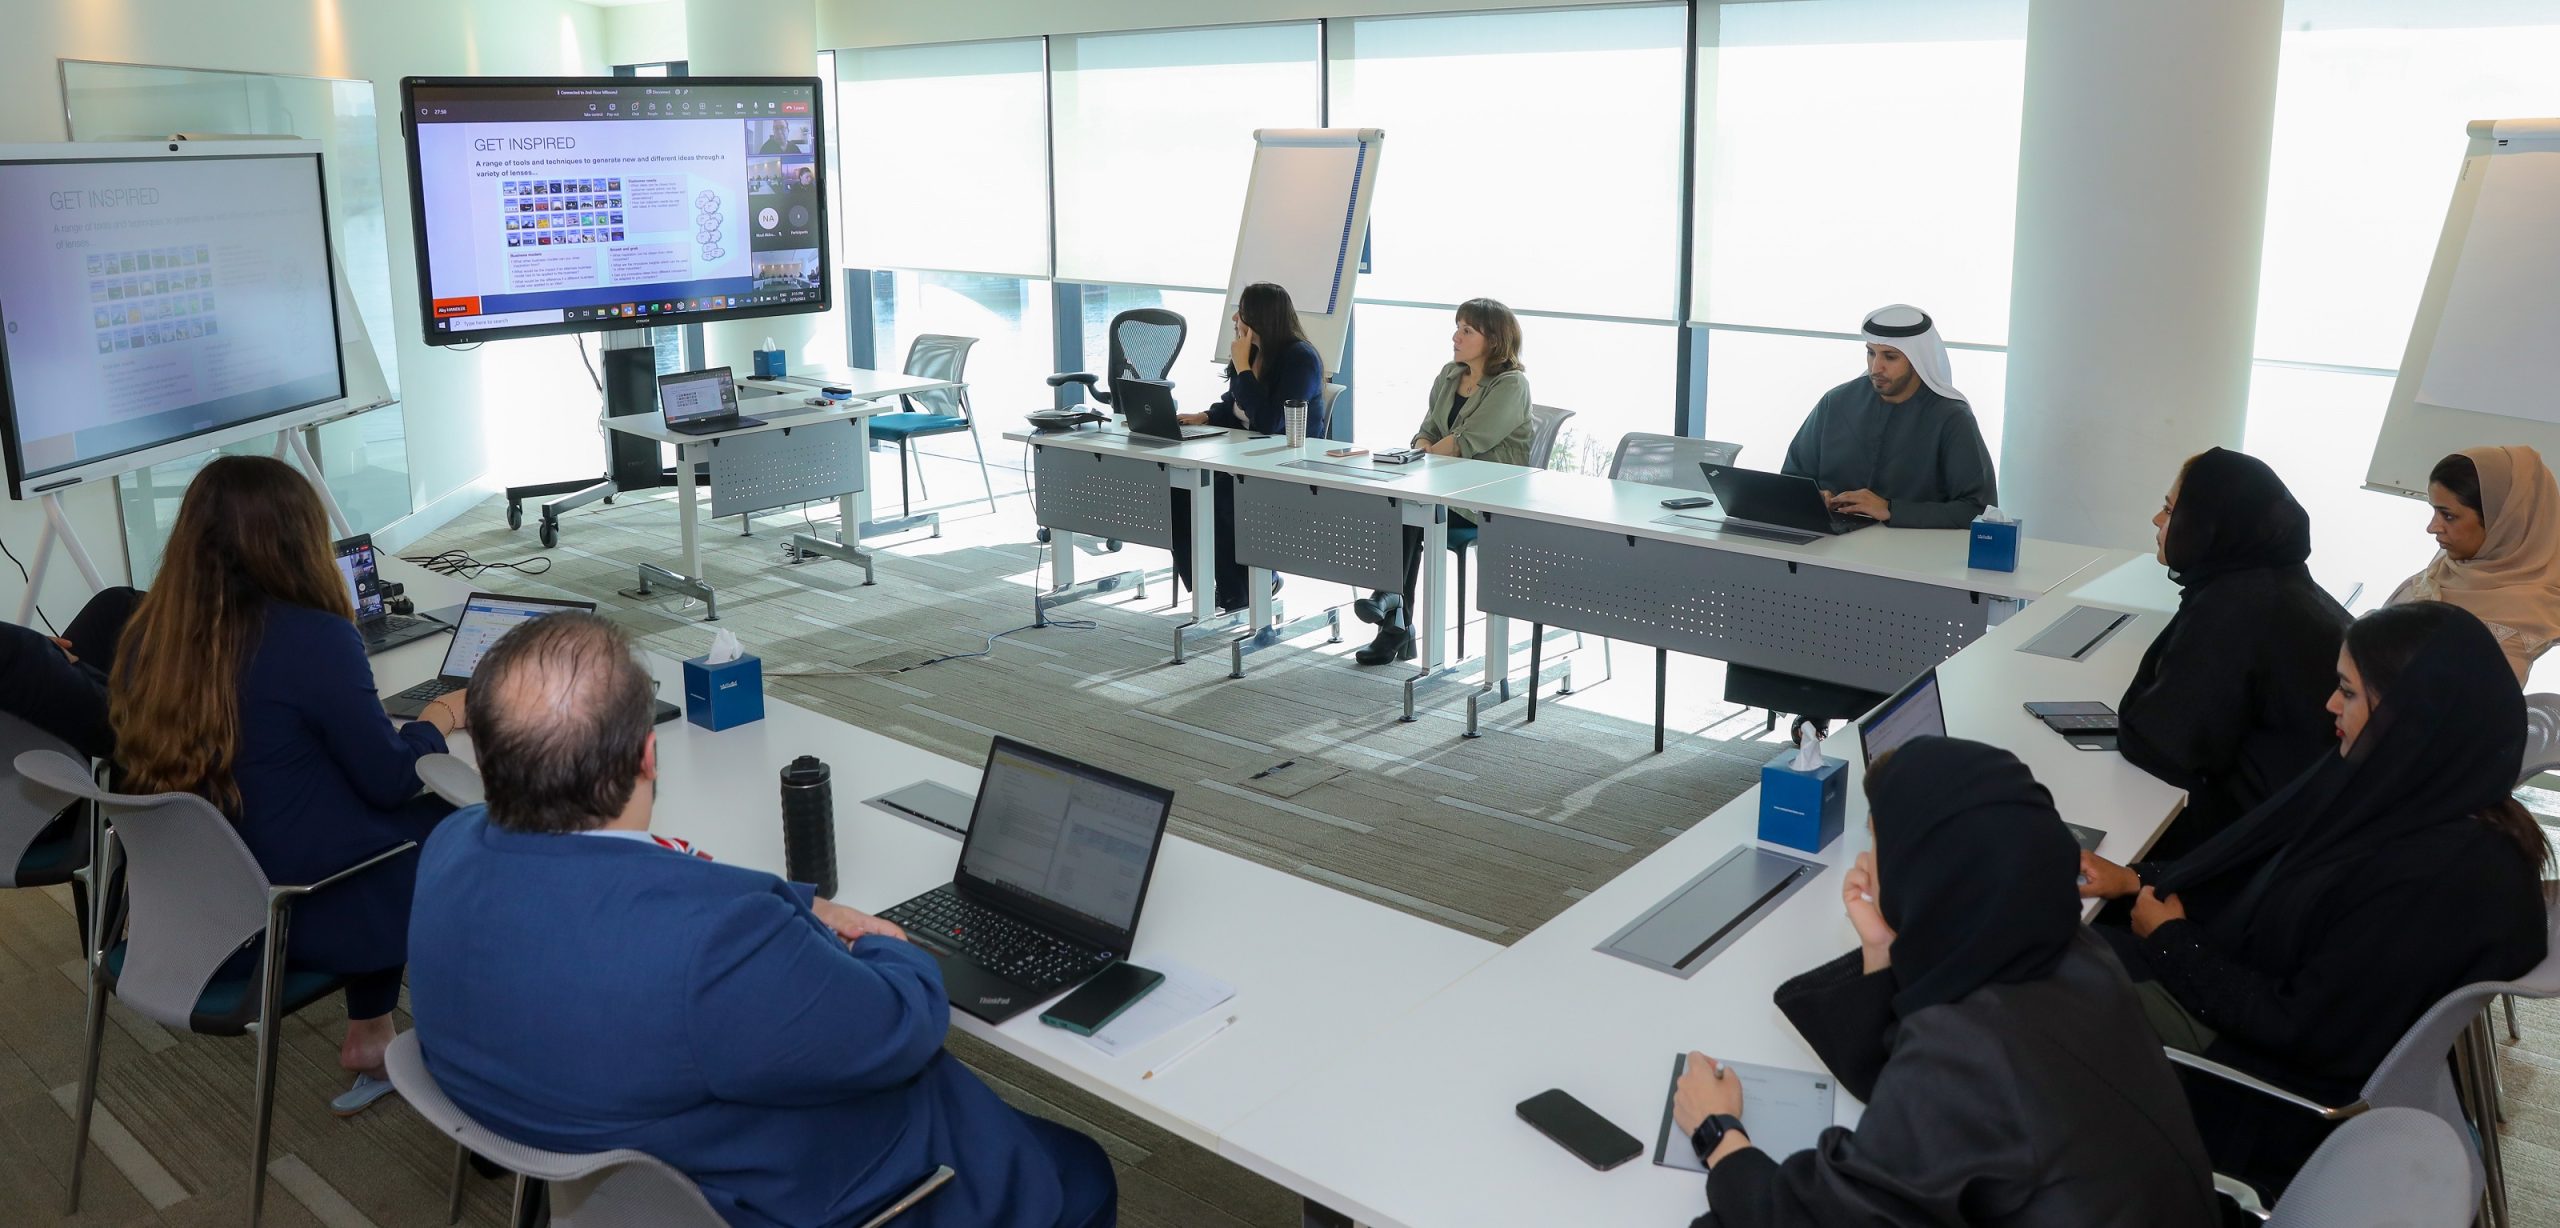 غرف دبي تطلق أسبوع الابتكار وتغرس ثقافة الإبداع والتفكير الاستشرافي بين موظفيها وعملائها في 13 فعالية متنوعة